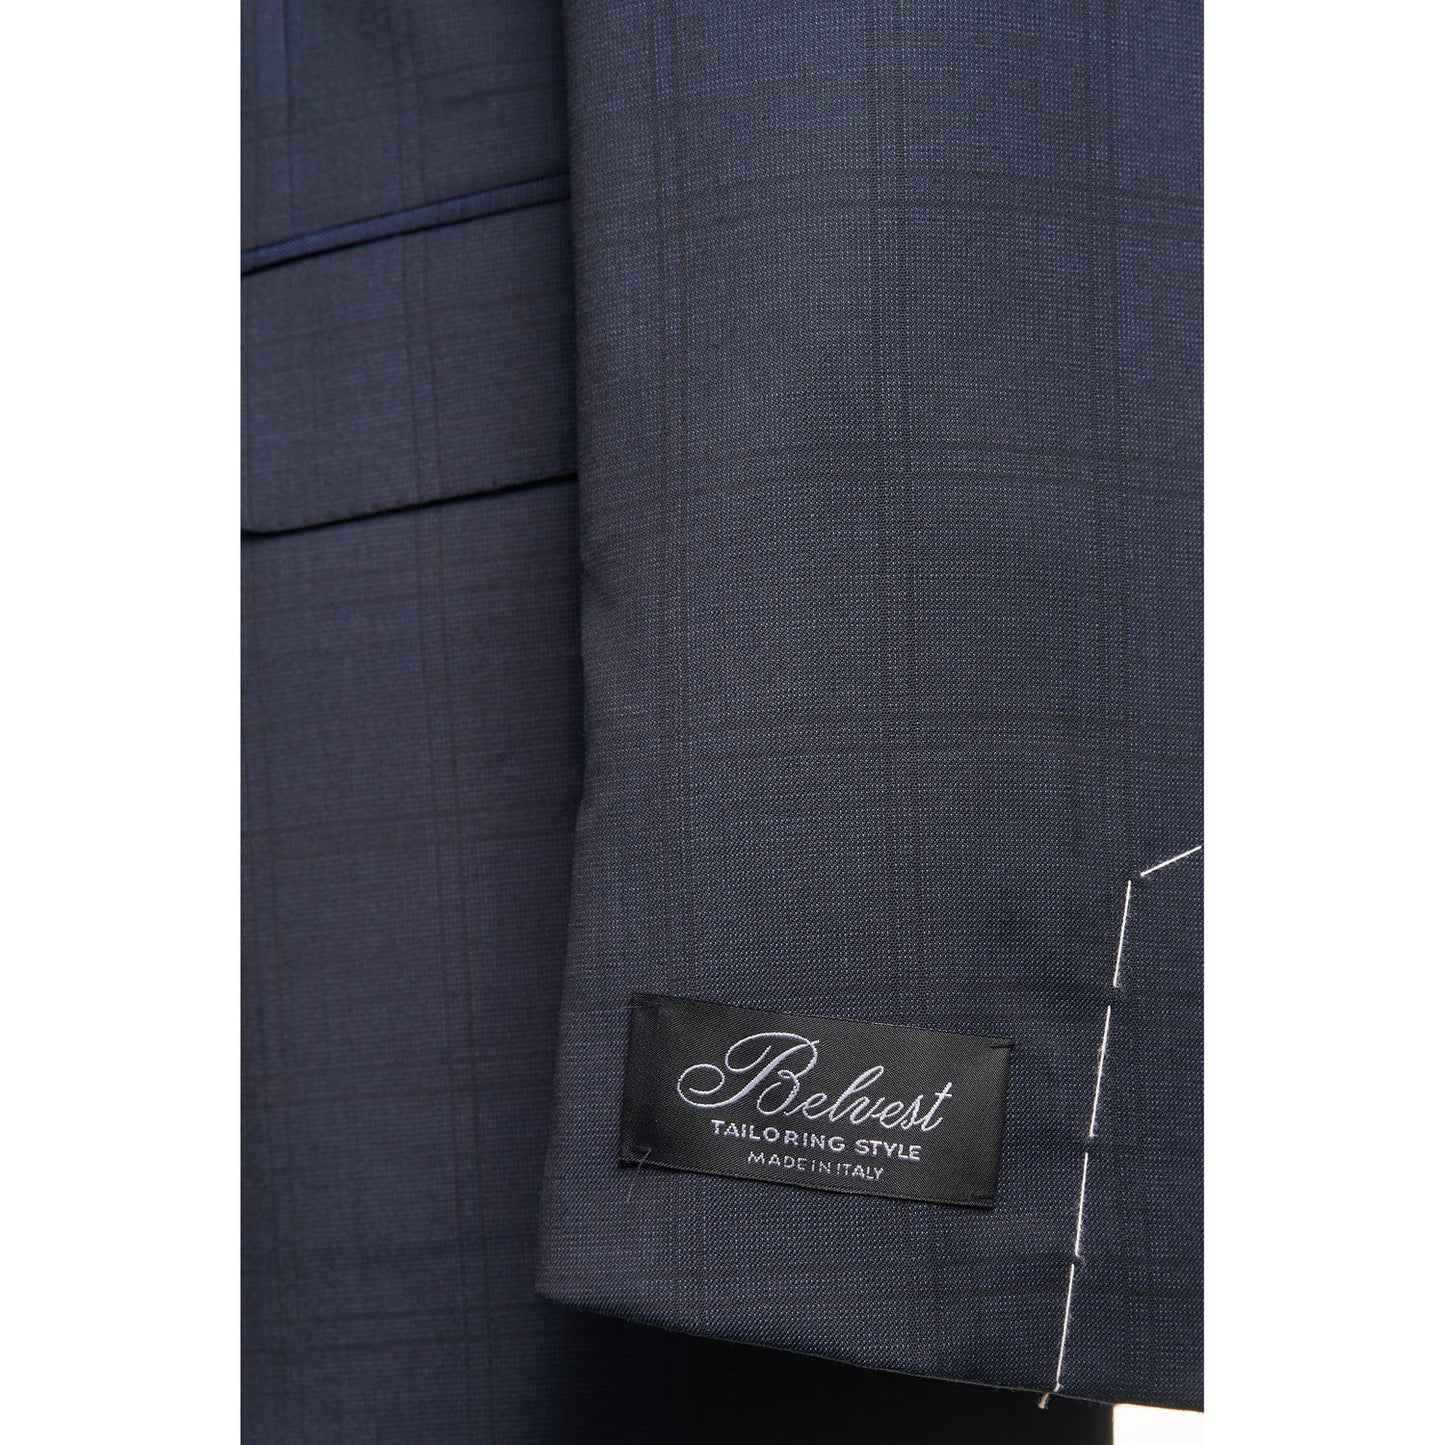 Belvest Super 130 Wool Suit in Navy Windowpane Pattern